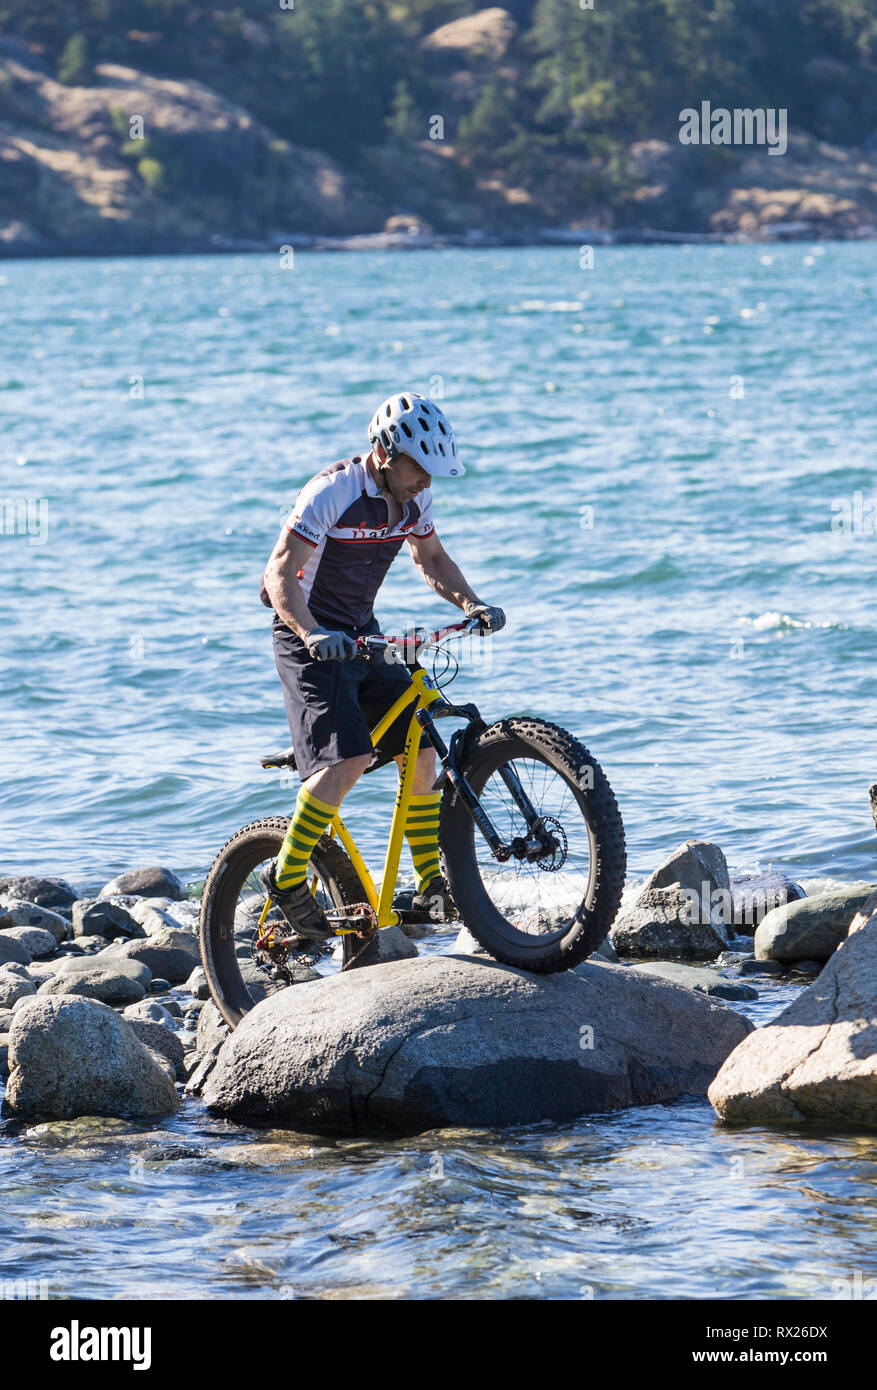 Vélos Fat, une nouvelle tendance dans le vélo de montagne permet d'équitation sur terrain plus inhabituelles. Quadra Island, British Columbia, Canada Banque D'Images